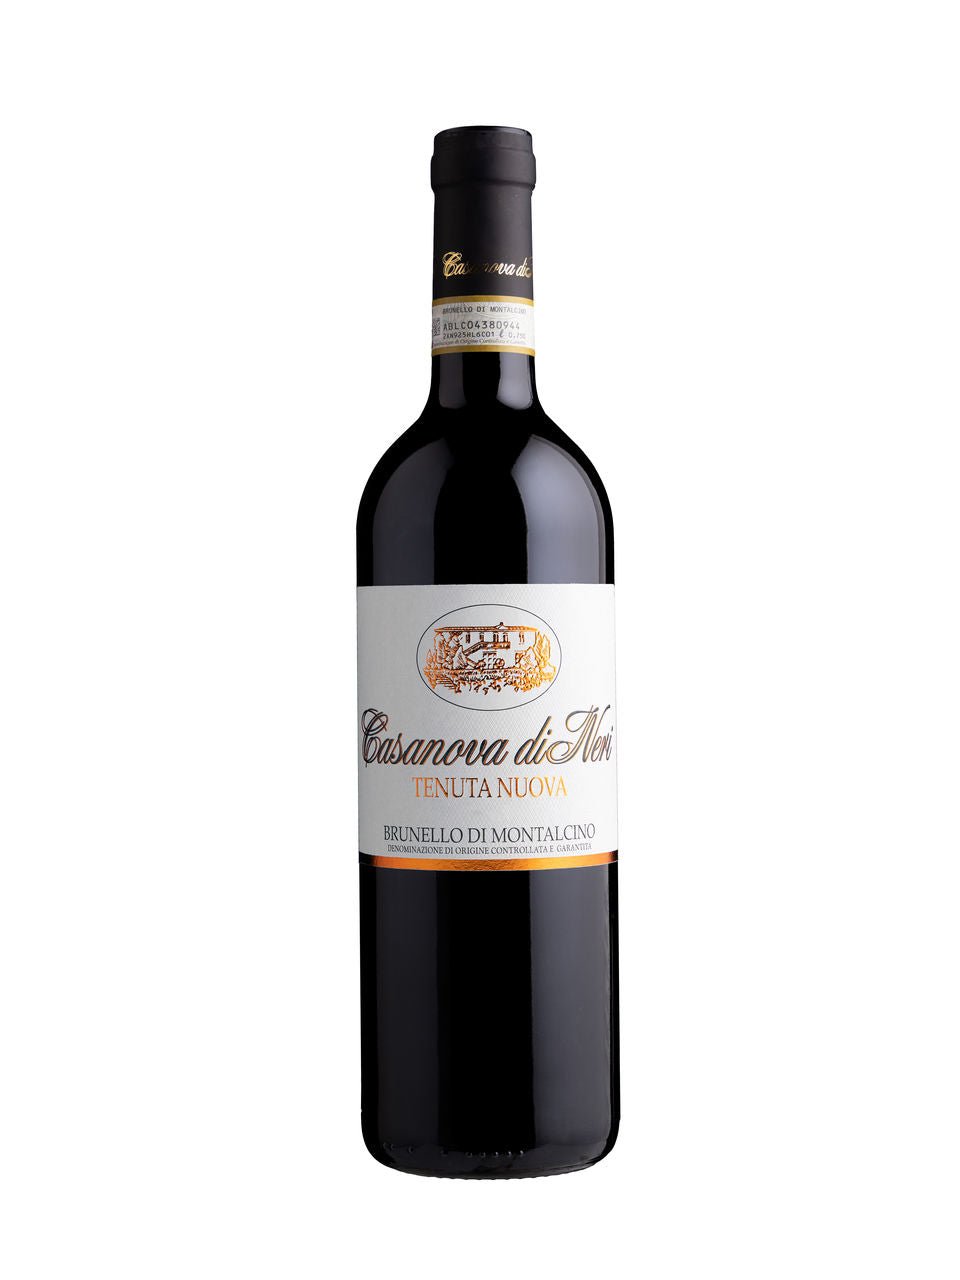 Casanova di Neri Tenuta Nuova Brunello di Montalcino | Exquisite Wine & Alcohol Gift Delivery Toronto Canada | Vyno